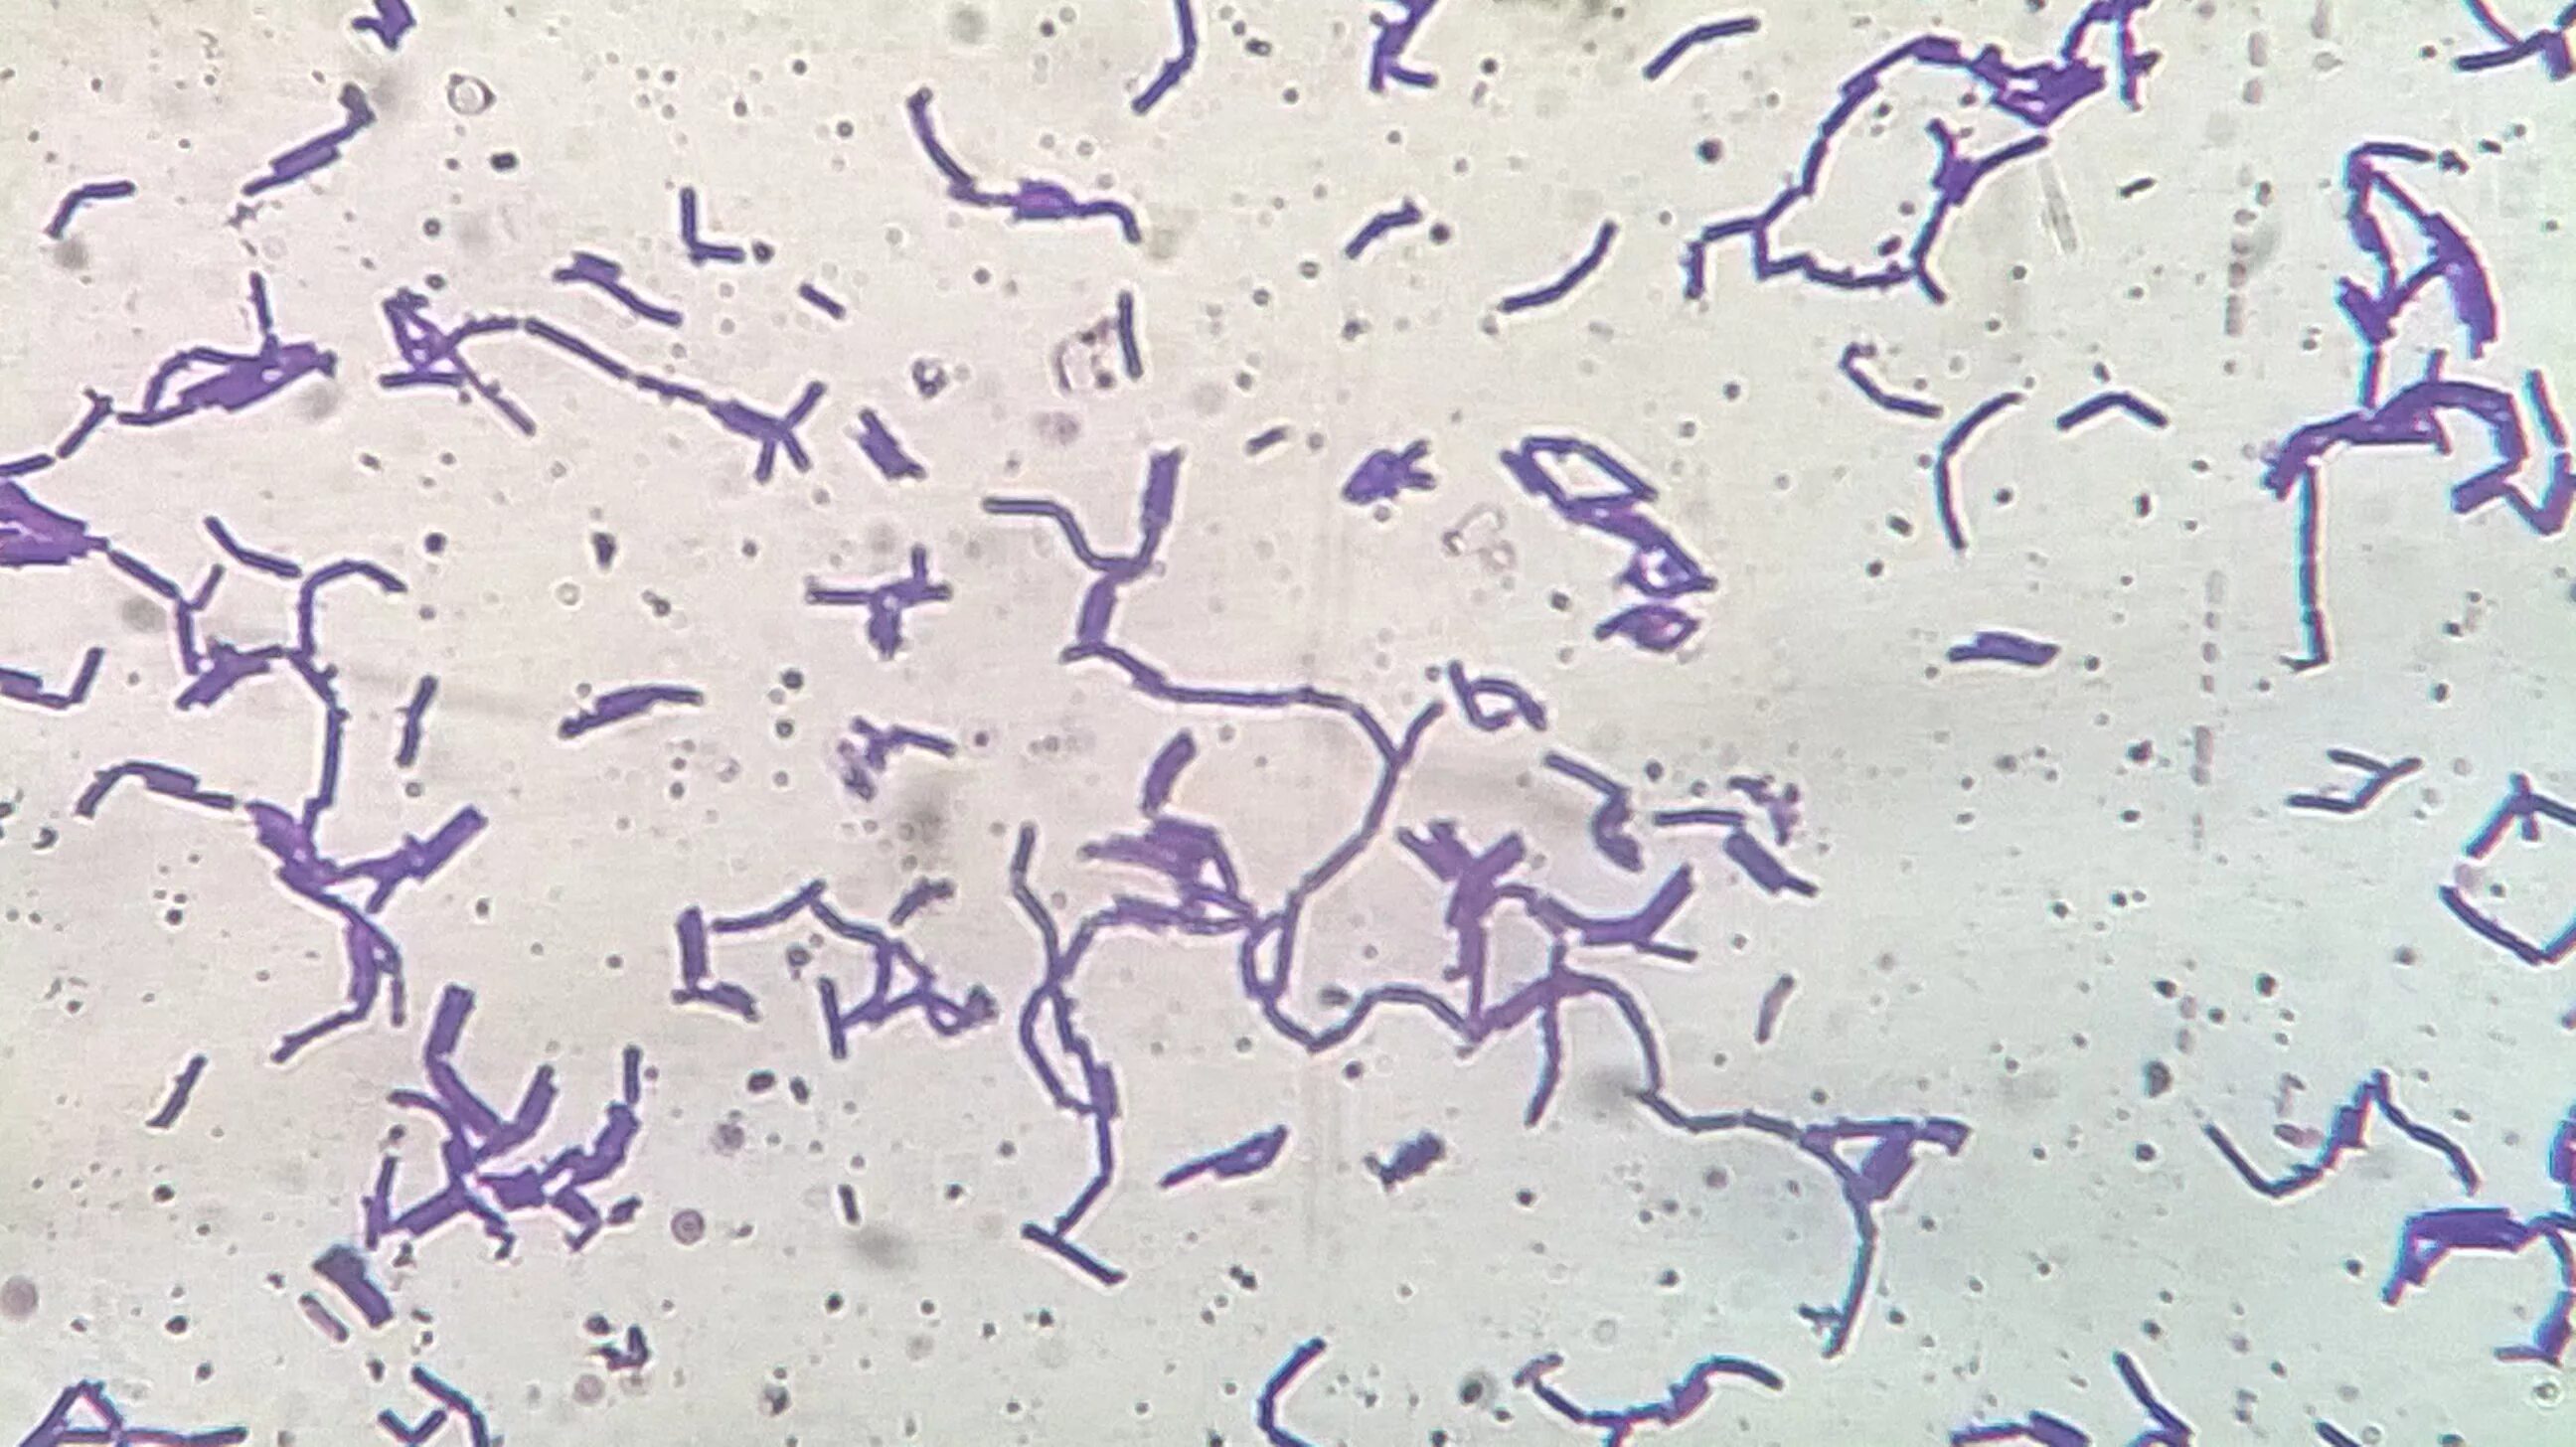 Палочка бифидобактерии. Lactobacillus Acidophilus в микроскопе. Лактобациллы палочки Дедерлейна. Молочнокислые бактерии лактобациллы. Ацидофильные лактобактерии (Lactobacillus Acidophilus).